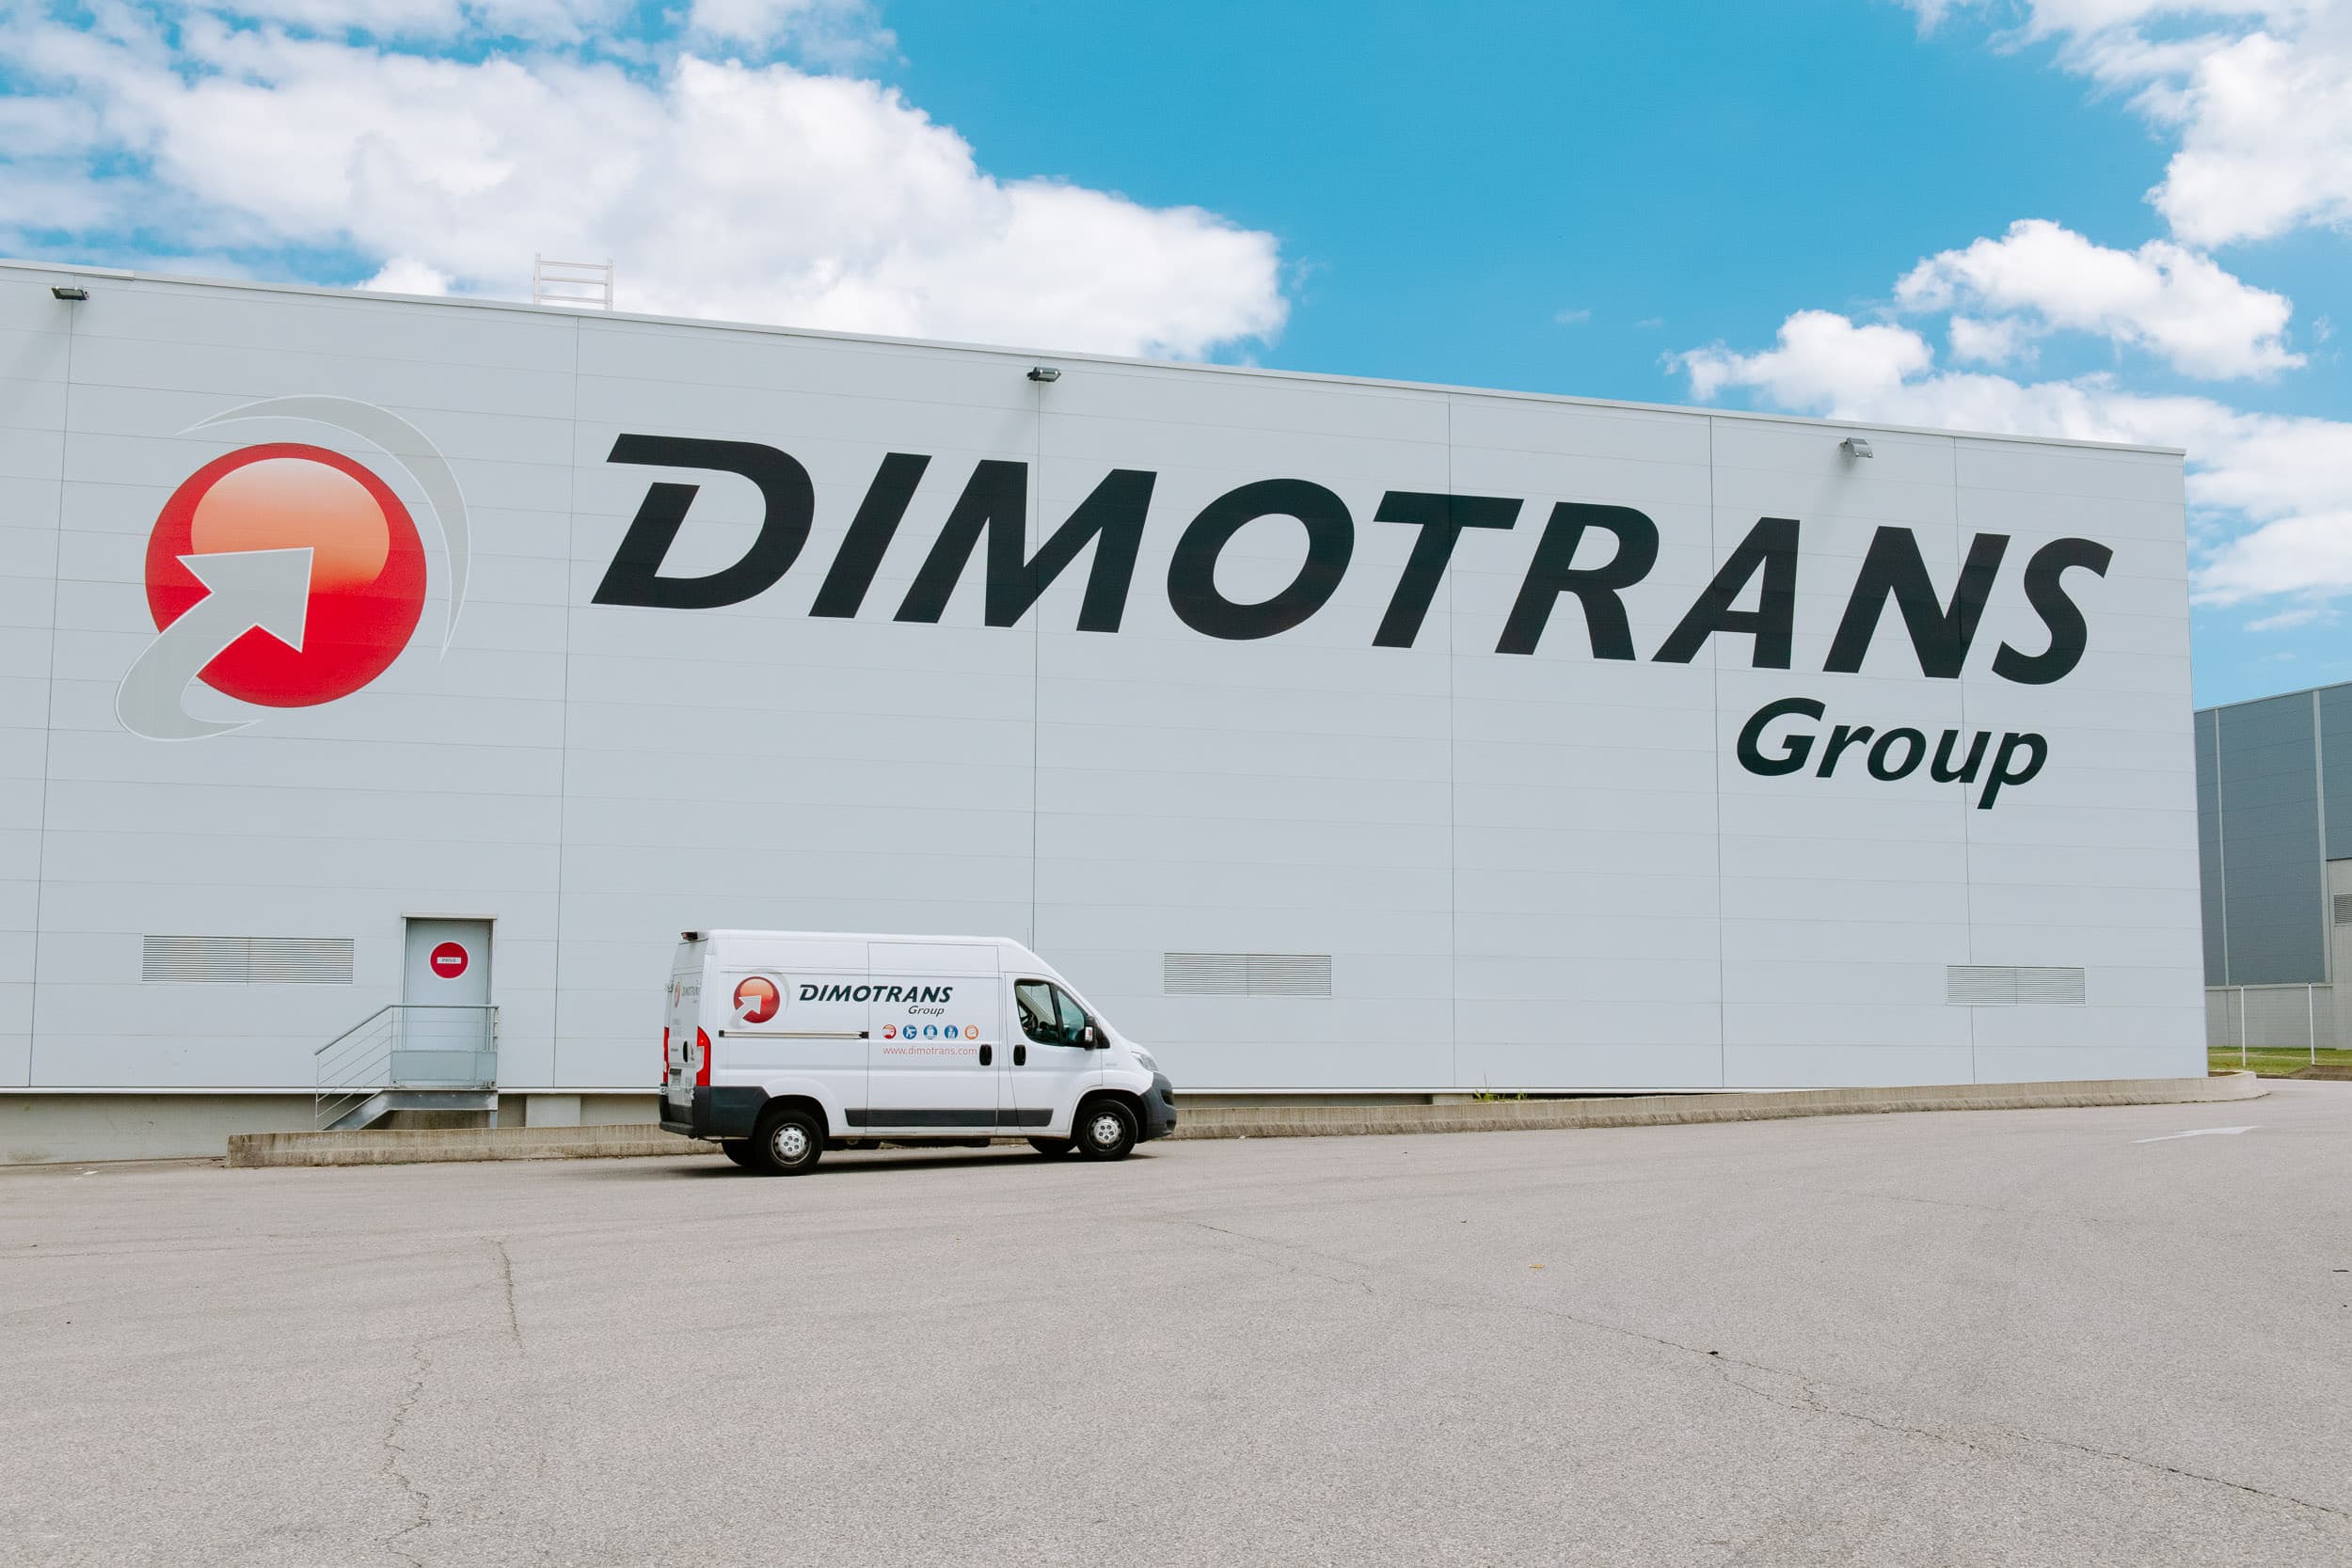 bâtiment avec logo DIMOTRANS Group avec une camionnette devant